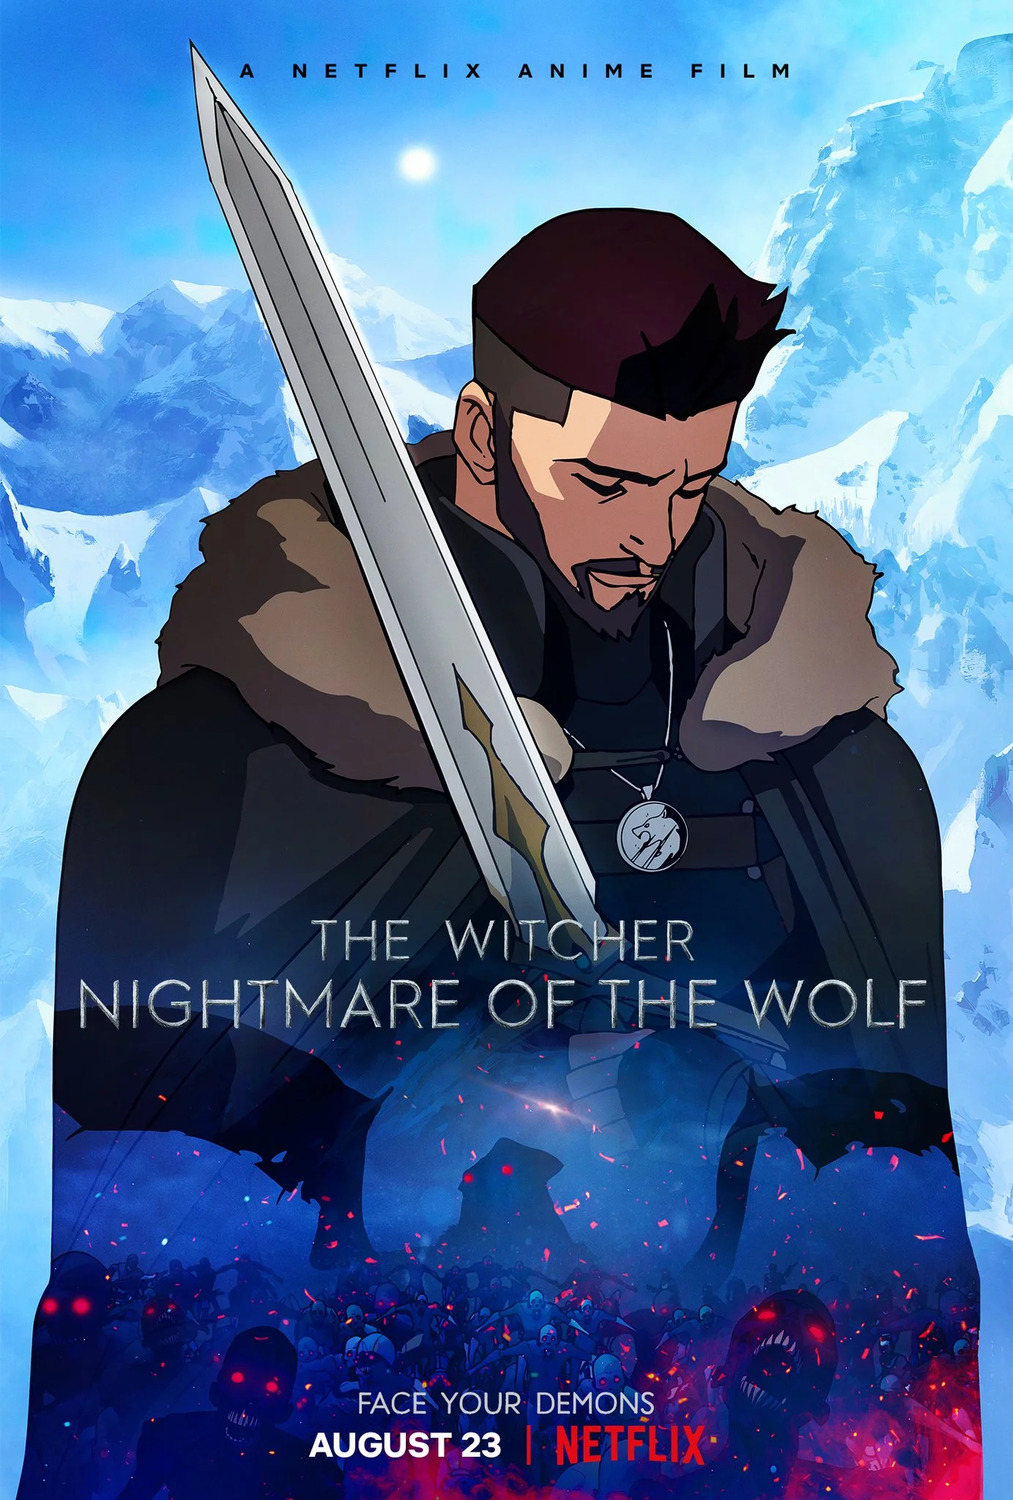 The Witcher: Lenda do Lobo  Logo da animação é divulgado - NerdBunker